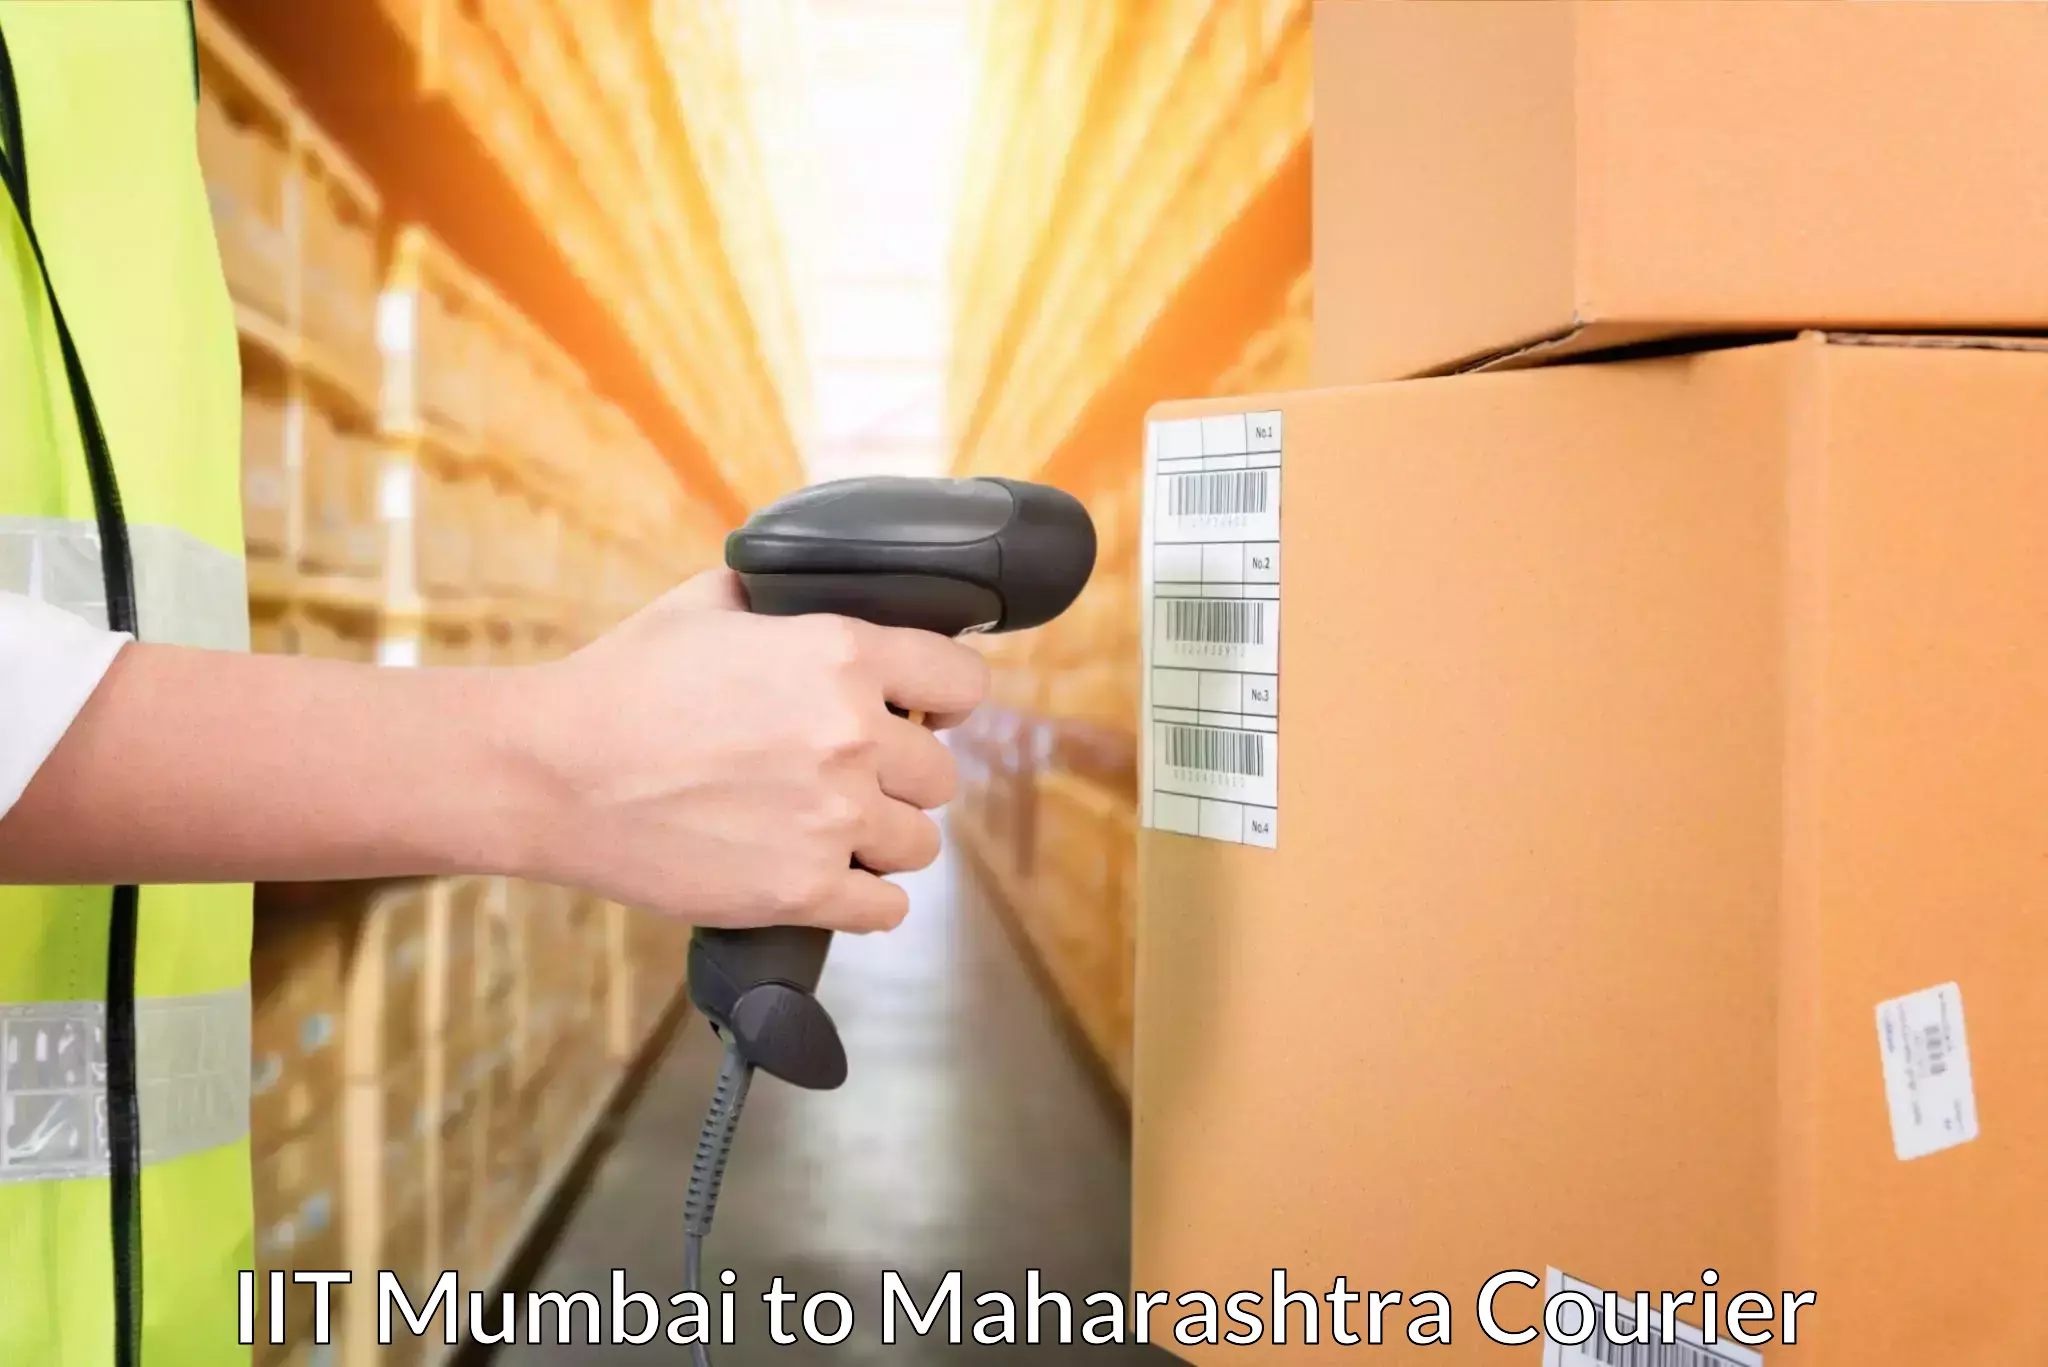 Advanced shipping network IIT Mumbai to Homi Bhabha National Institute Mumbai